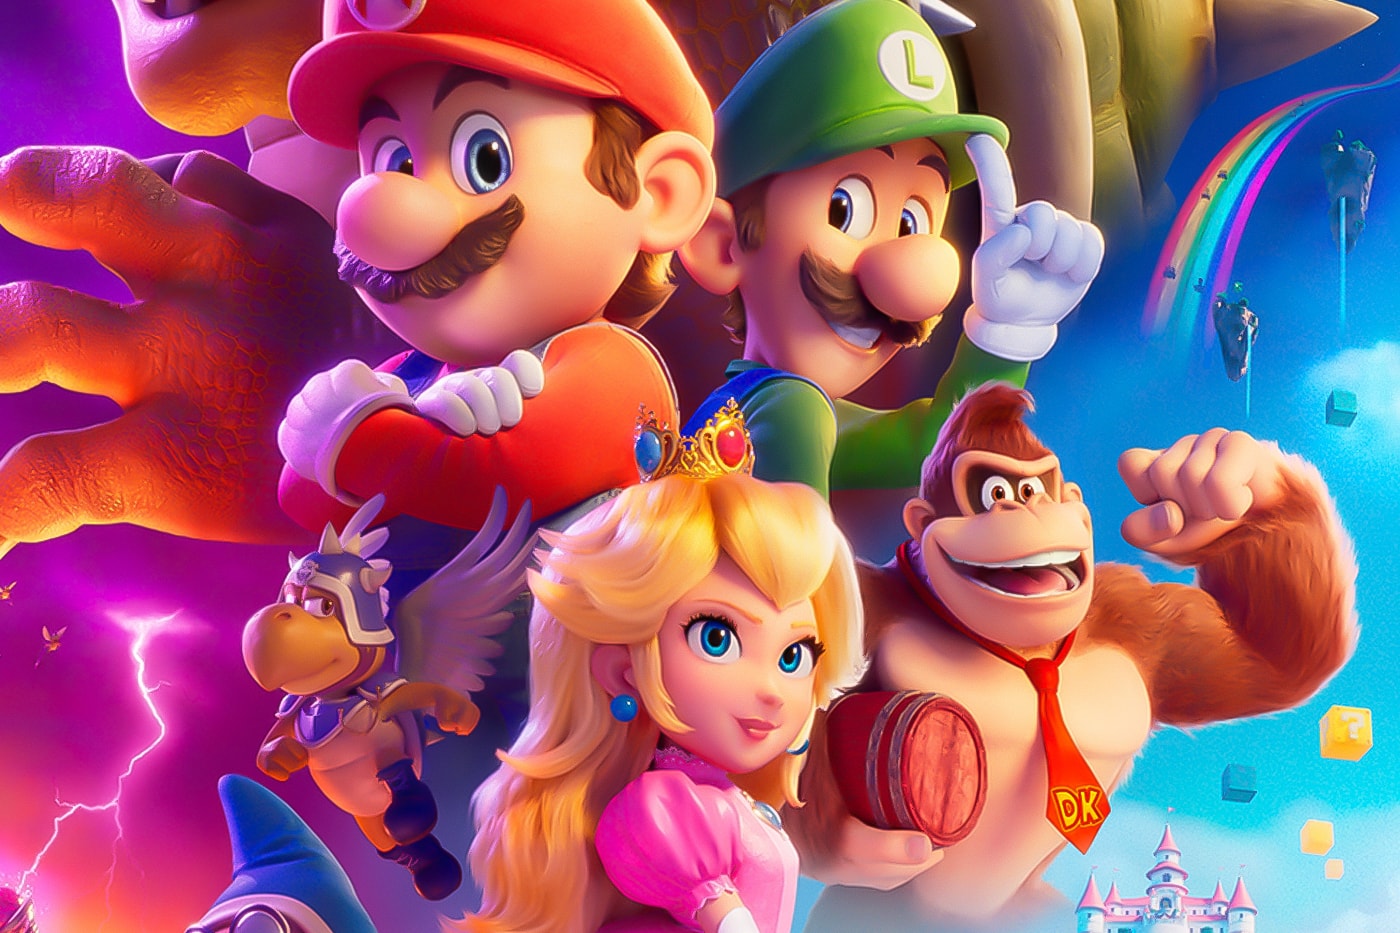 超級瑪利歐兄弟電影版《The Super Mario Bros. Movie》爛番茄評價呈現兩極